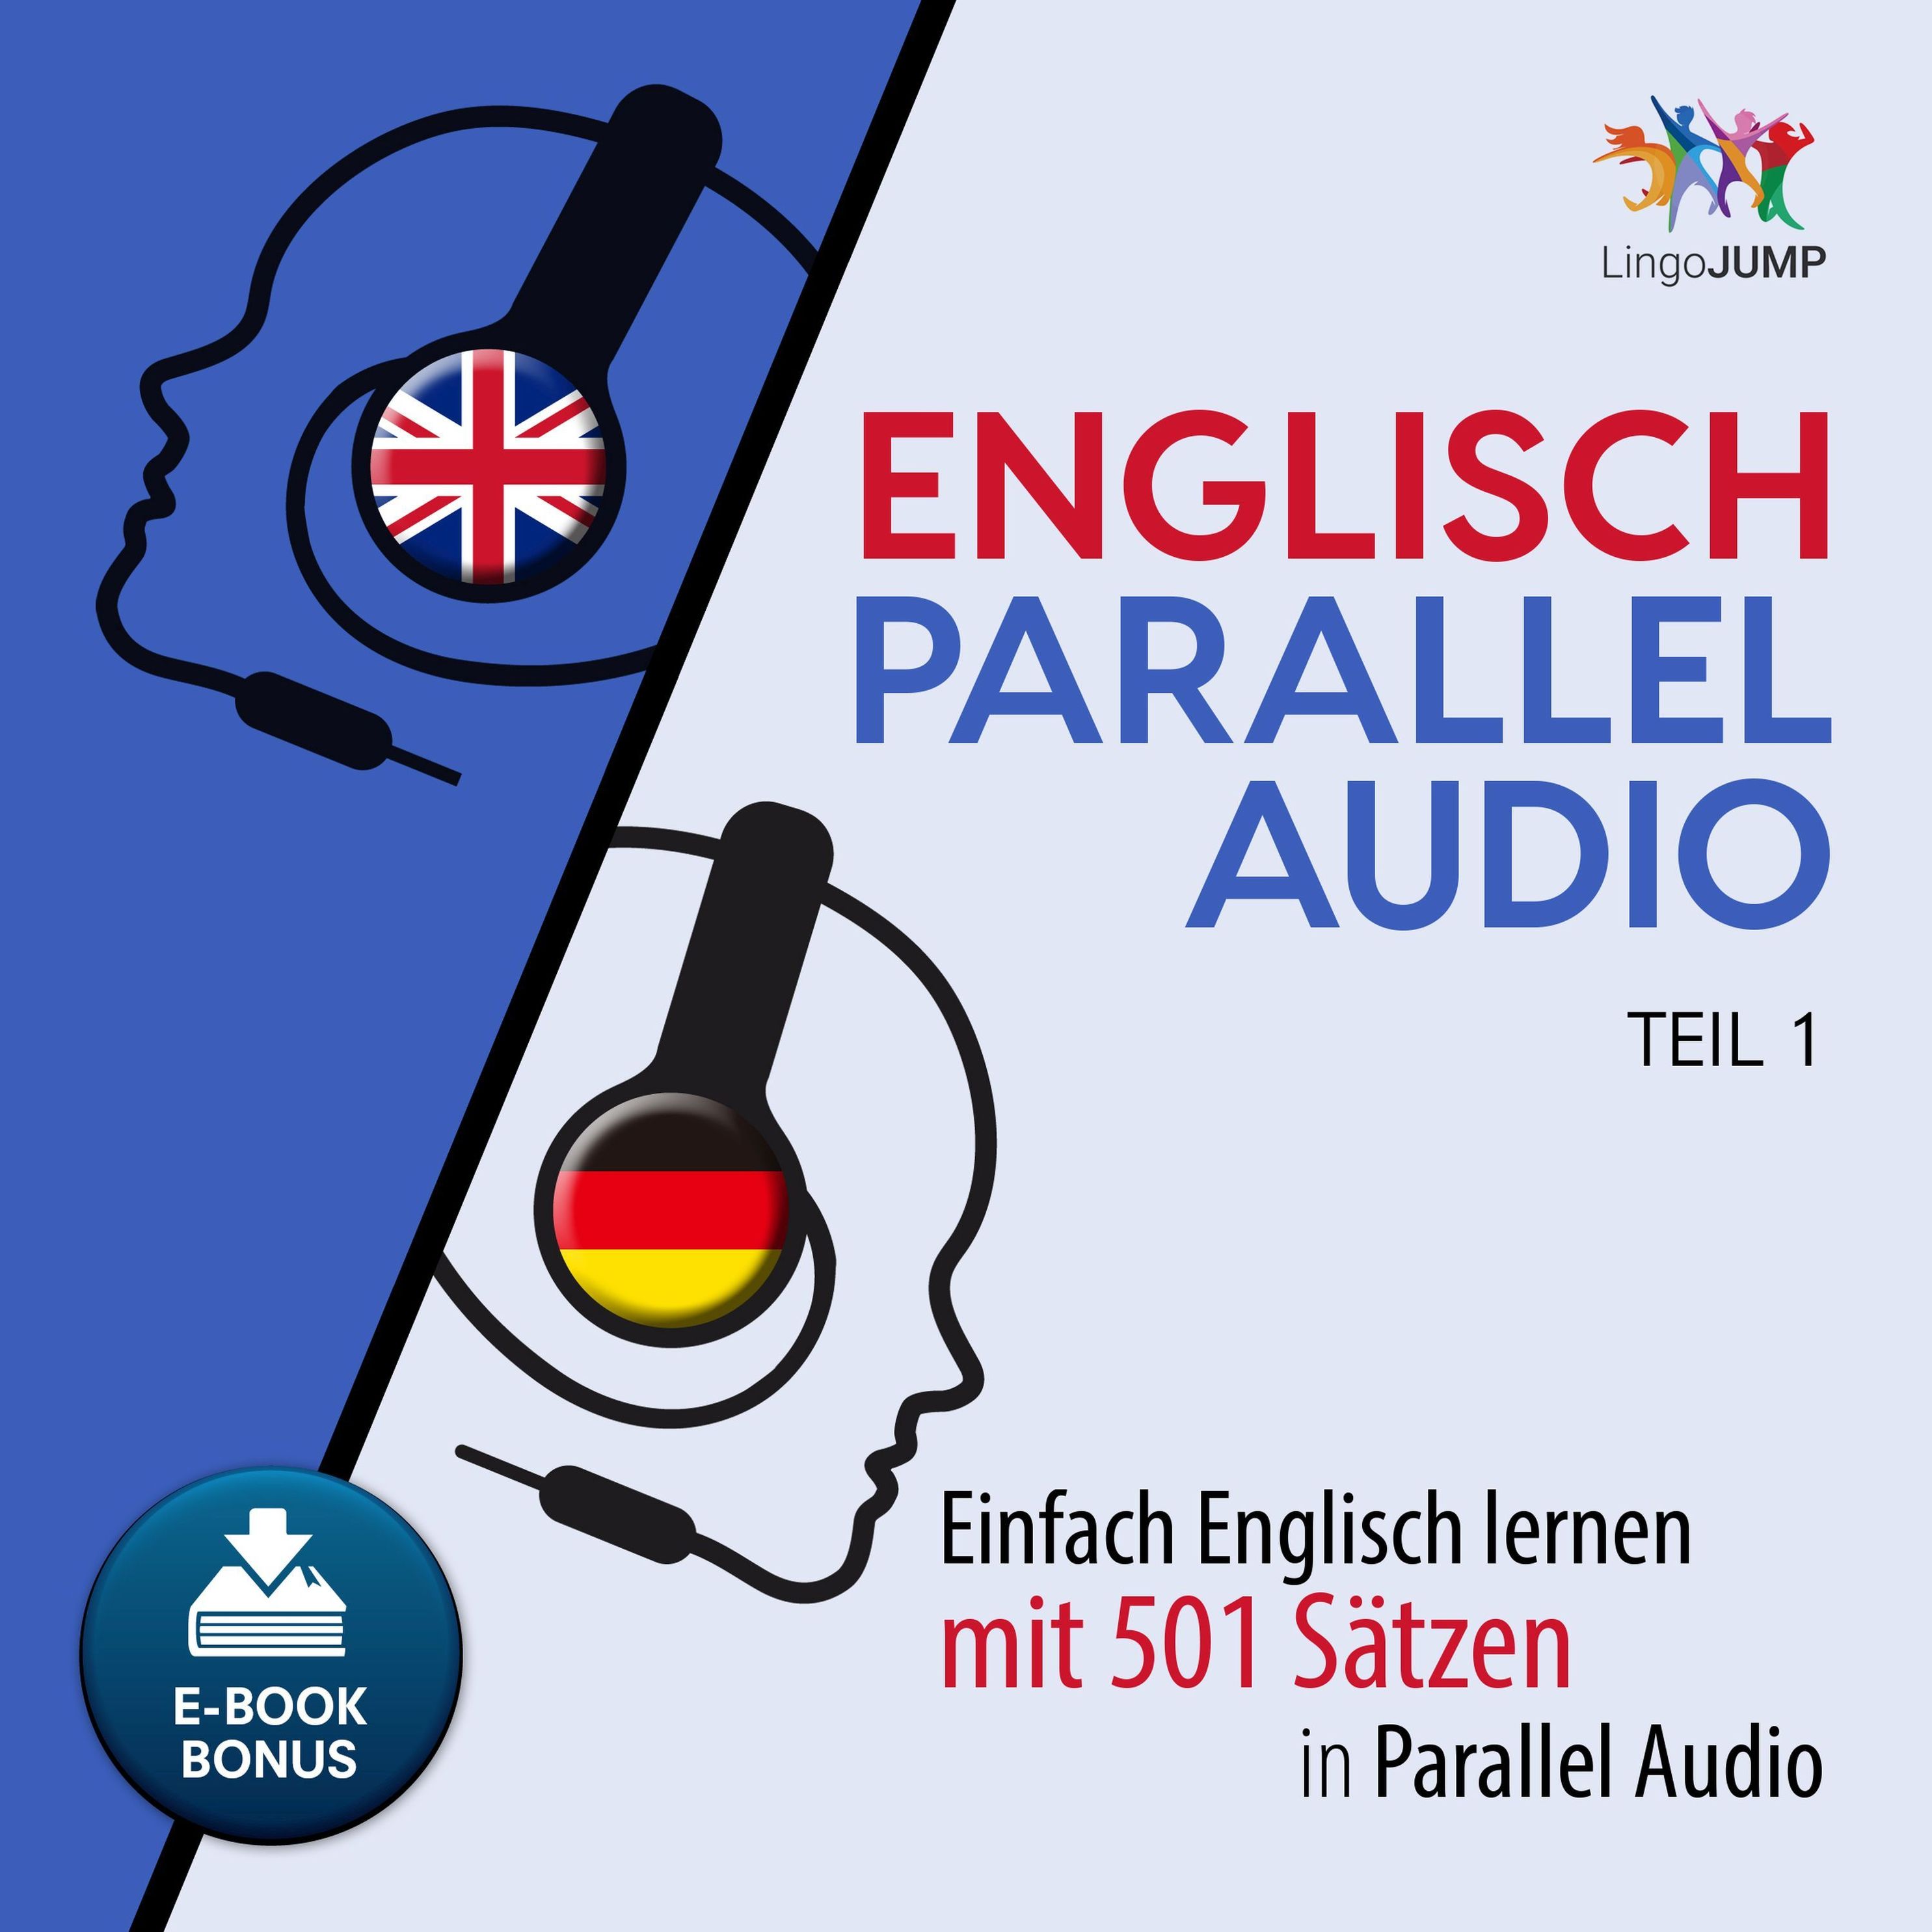 Englisch Parallel Audio - Teil 1 Hörbuch Download | Weltbild